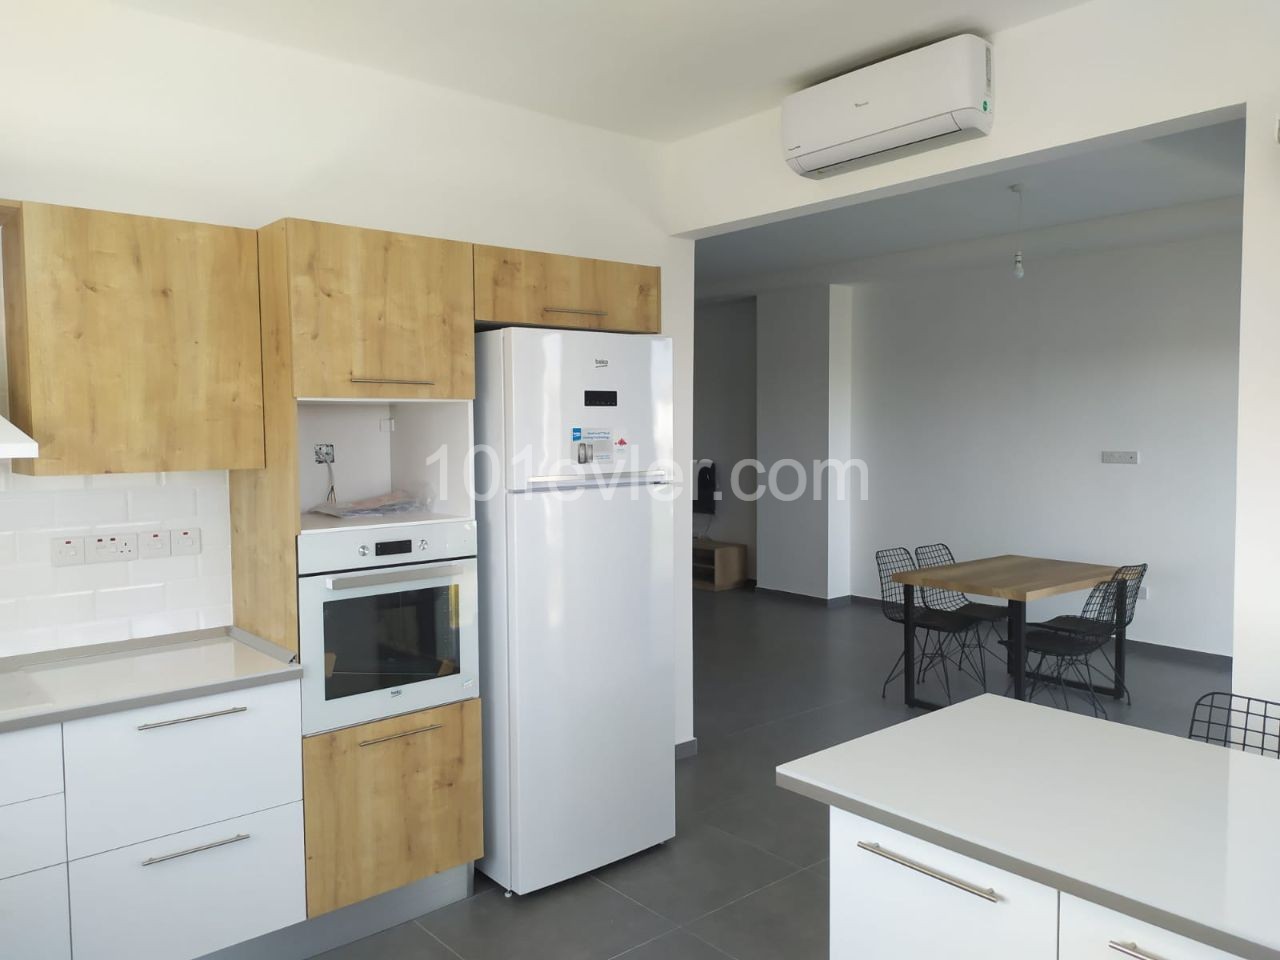 2 Bed Sea View Apartment Rent in Kyrenia City Centre.